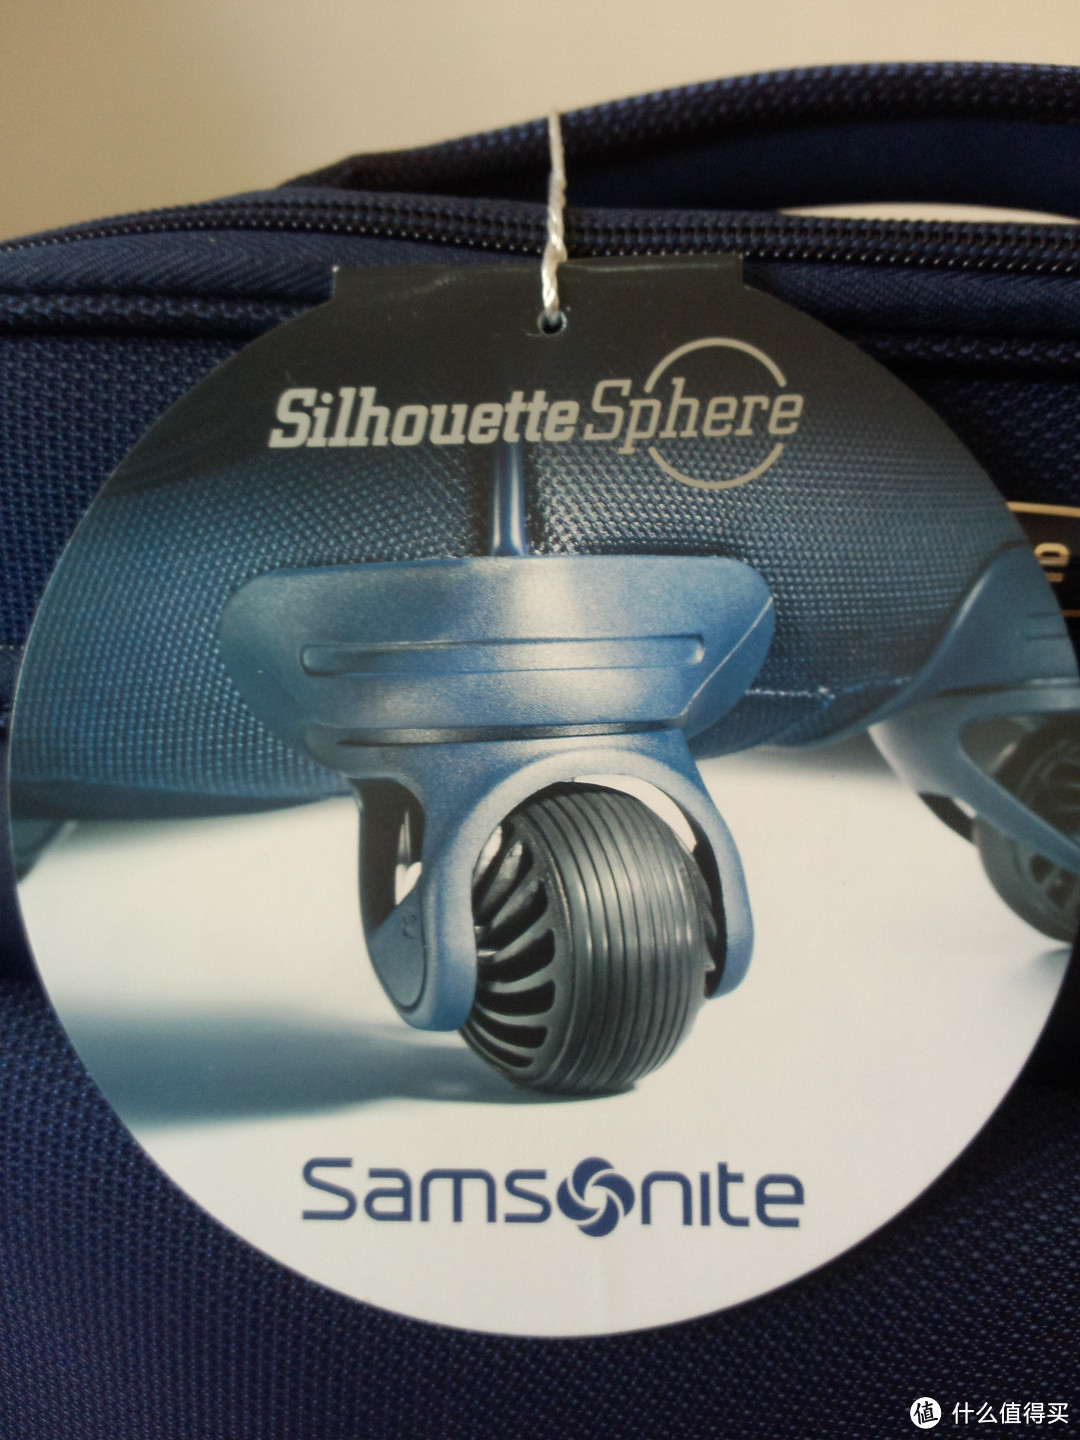 Samsonite 新秀丽 Silhouette Sphere Weekender 短途旅行登机包